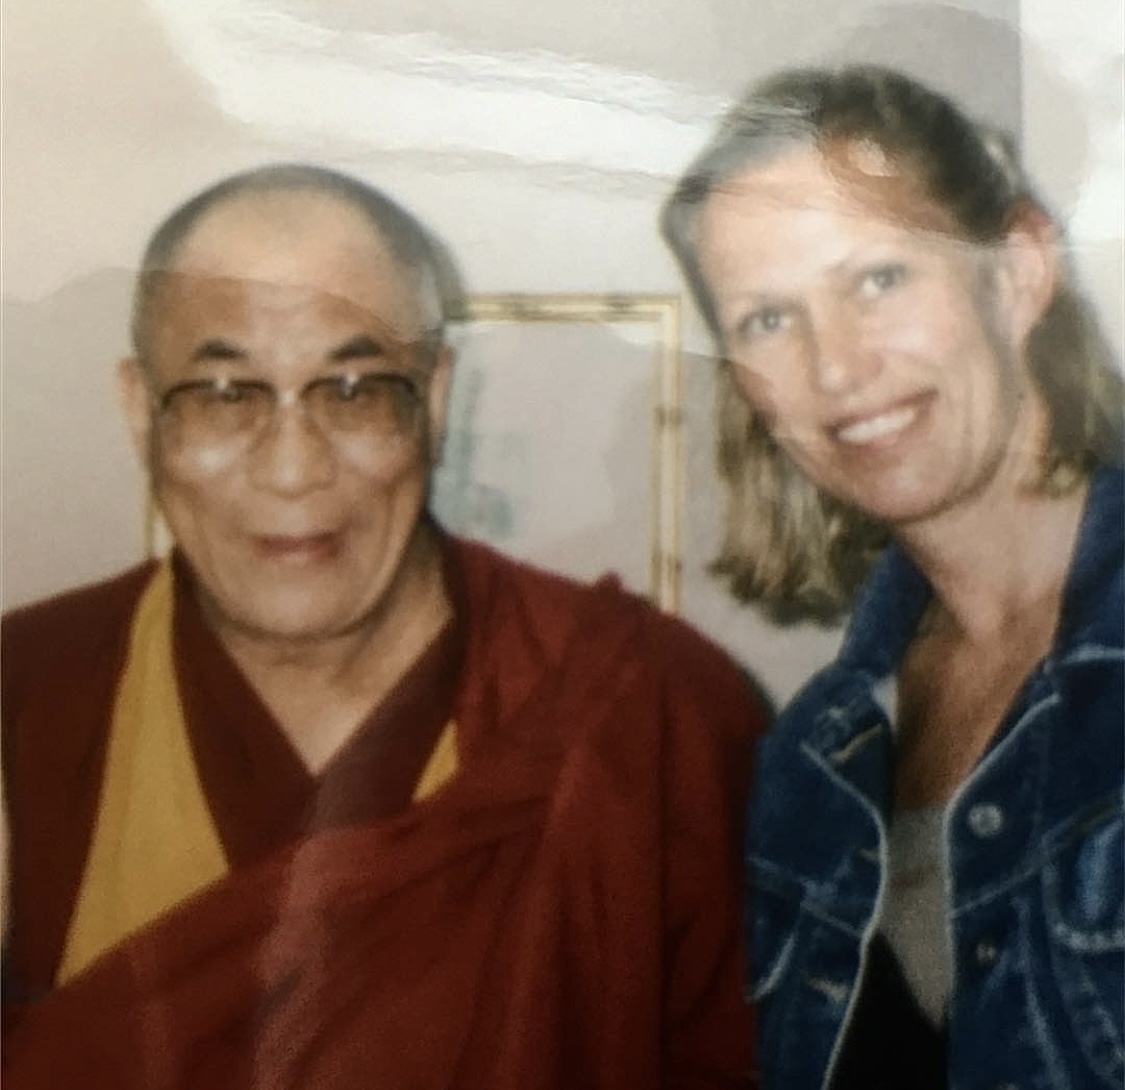 Bodil Fuhr og Dalai Lama: - Et gjennomført godt menneske jeg hadde gleden av å møte, skriver hun.